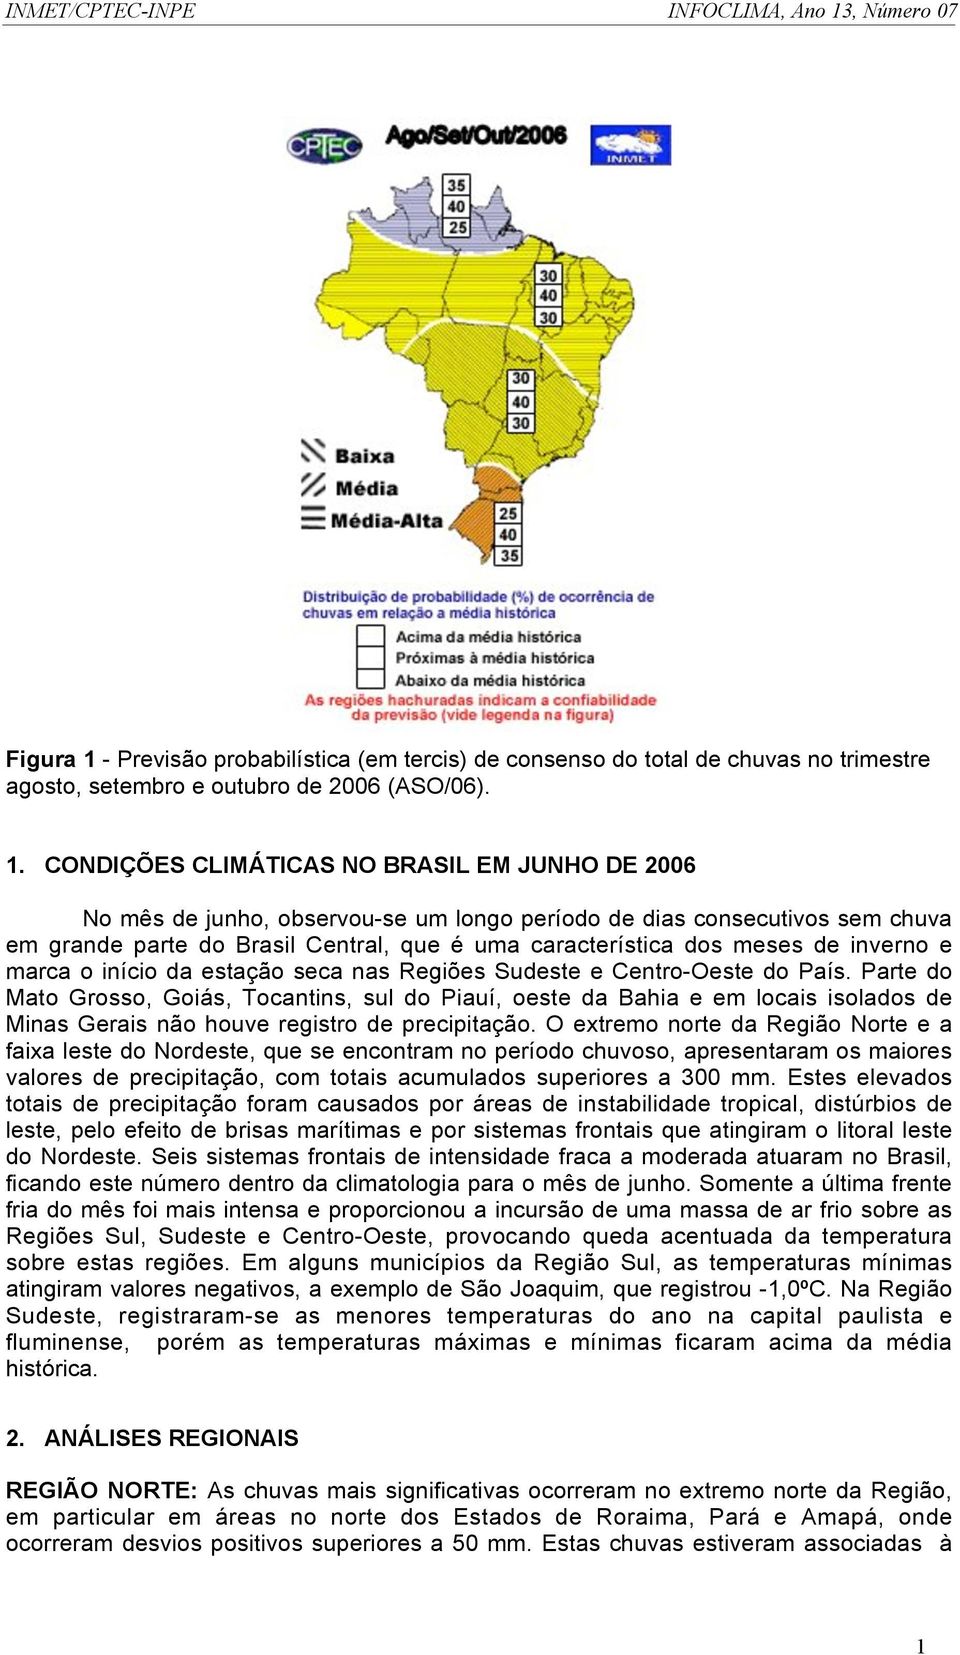 CONDIÇÕES CLIMÁTICAS NO BRASIL EM JUNHO DE 2006 No mês de junho, observou-se um longo período de dias consecutivos sem chuva em grande parte do Brasil Central, que é uma característica dos meses de